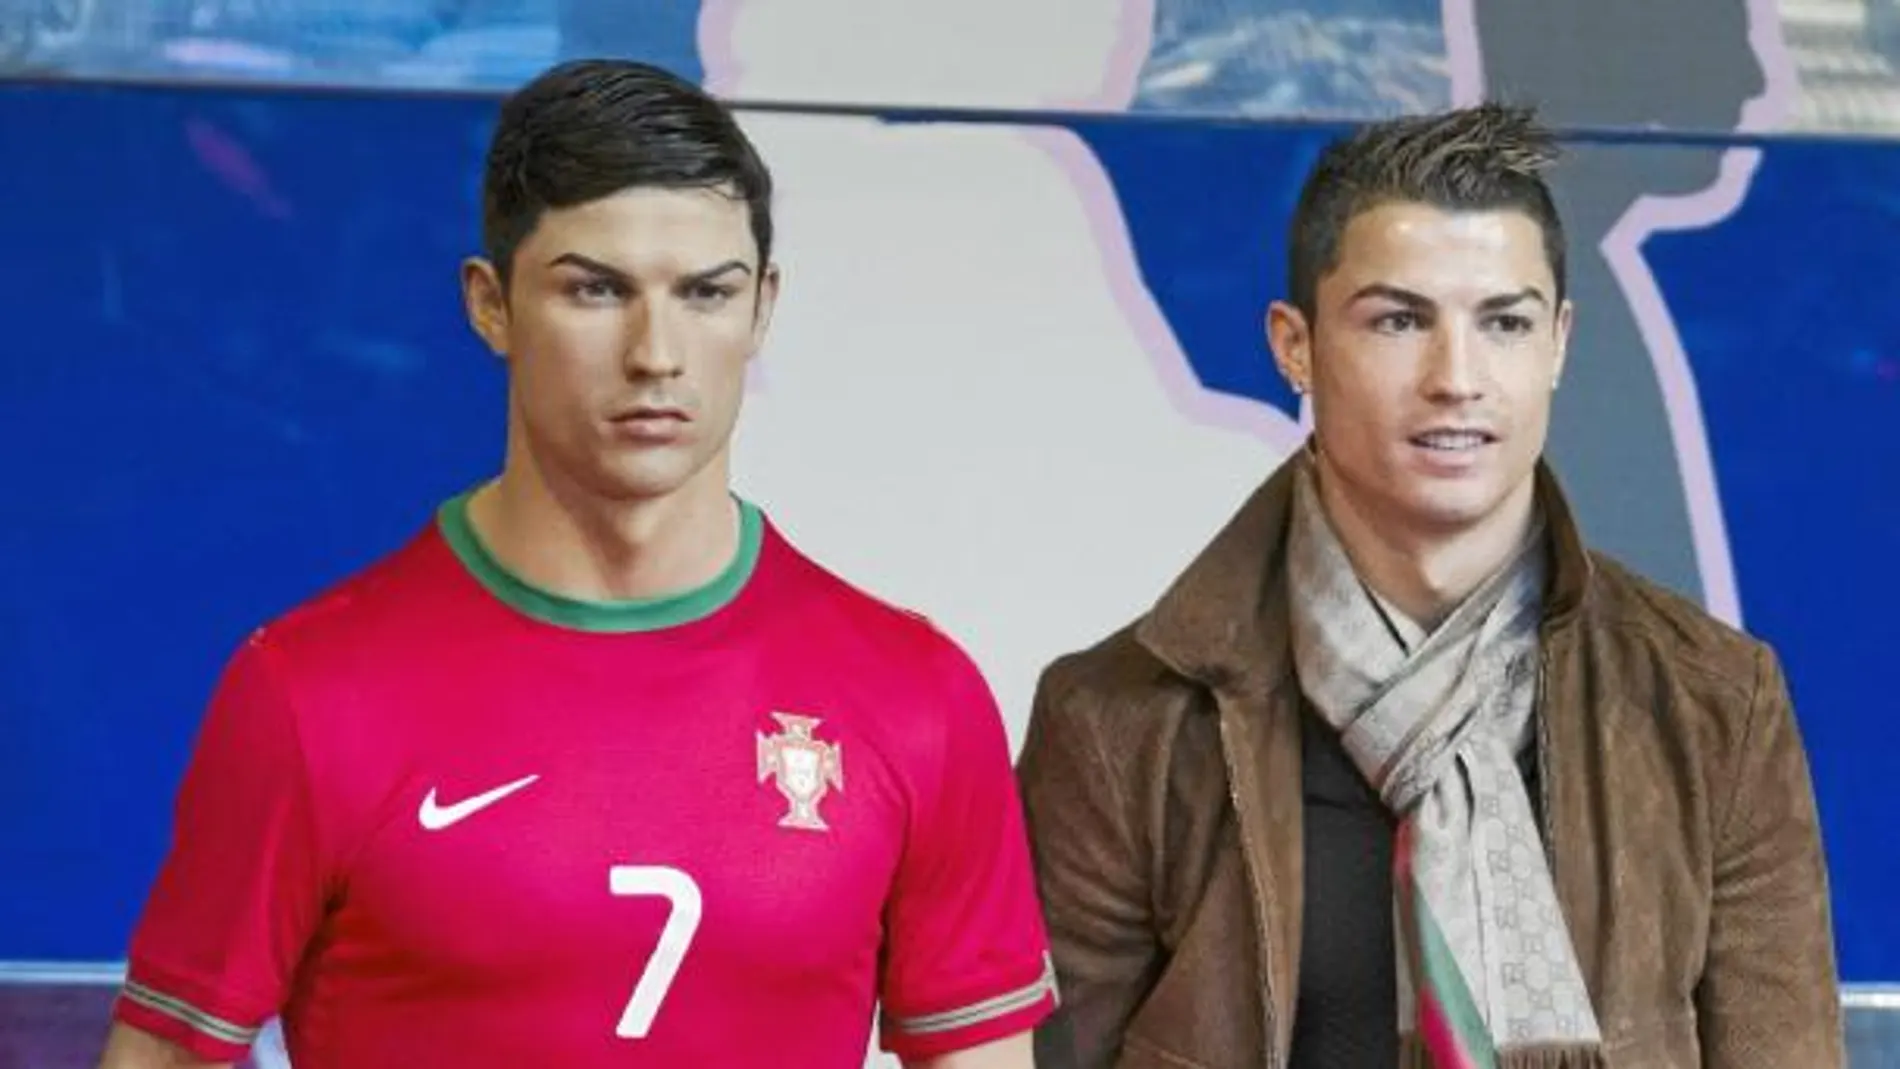 La figura de Ronaldo viste la equipación de Portugal